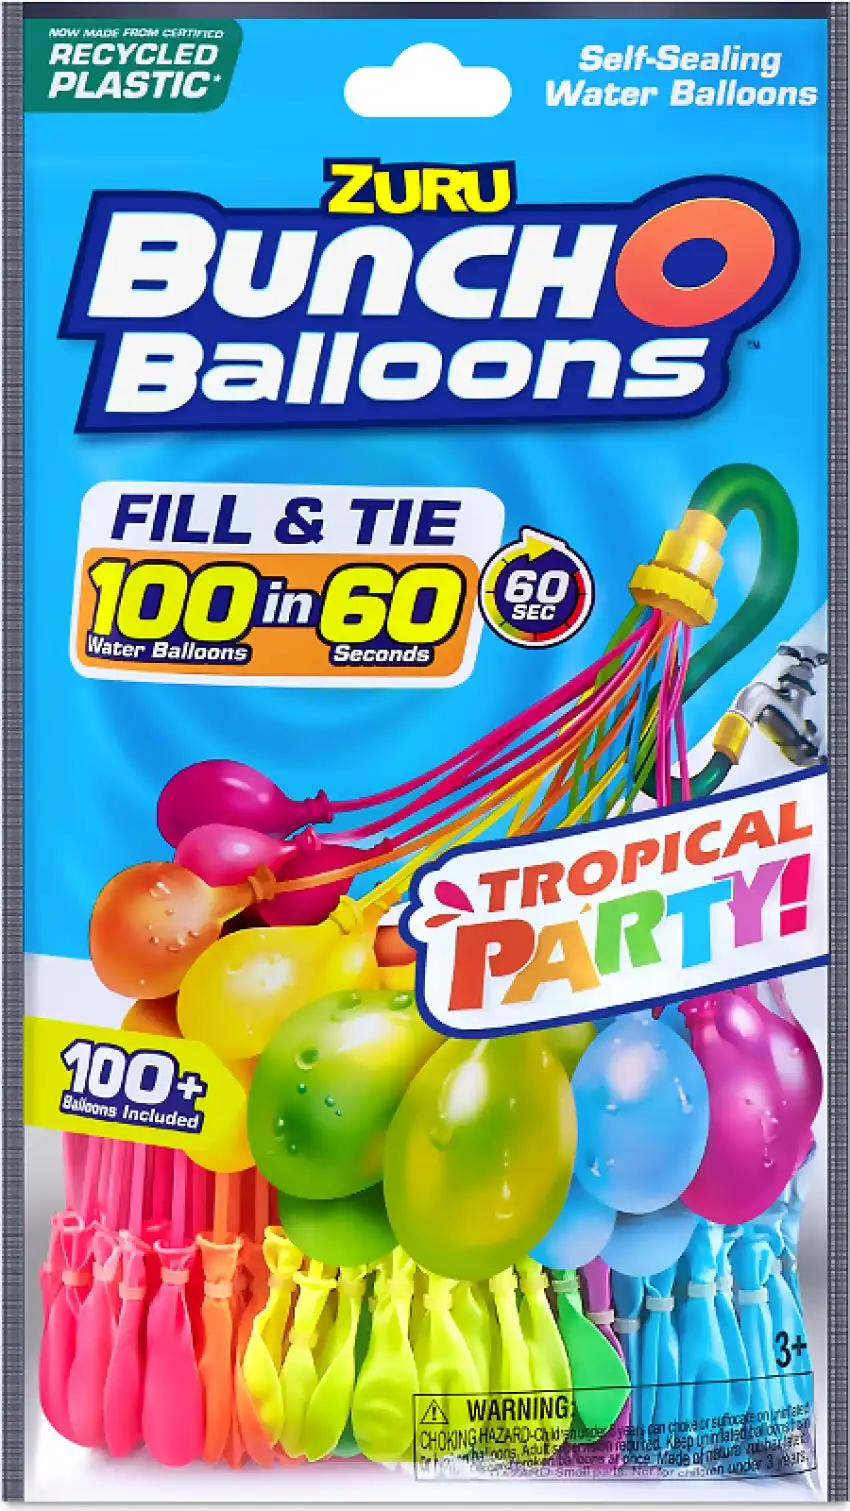 ZURU - Bunch O Balloons Tropical Party 100+